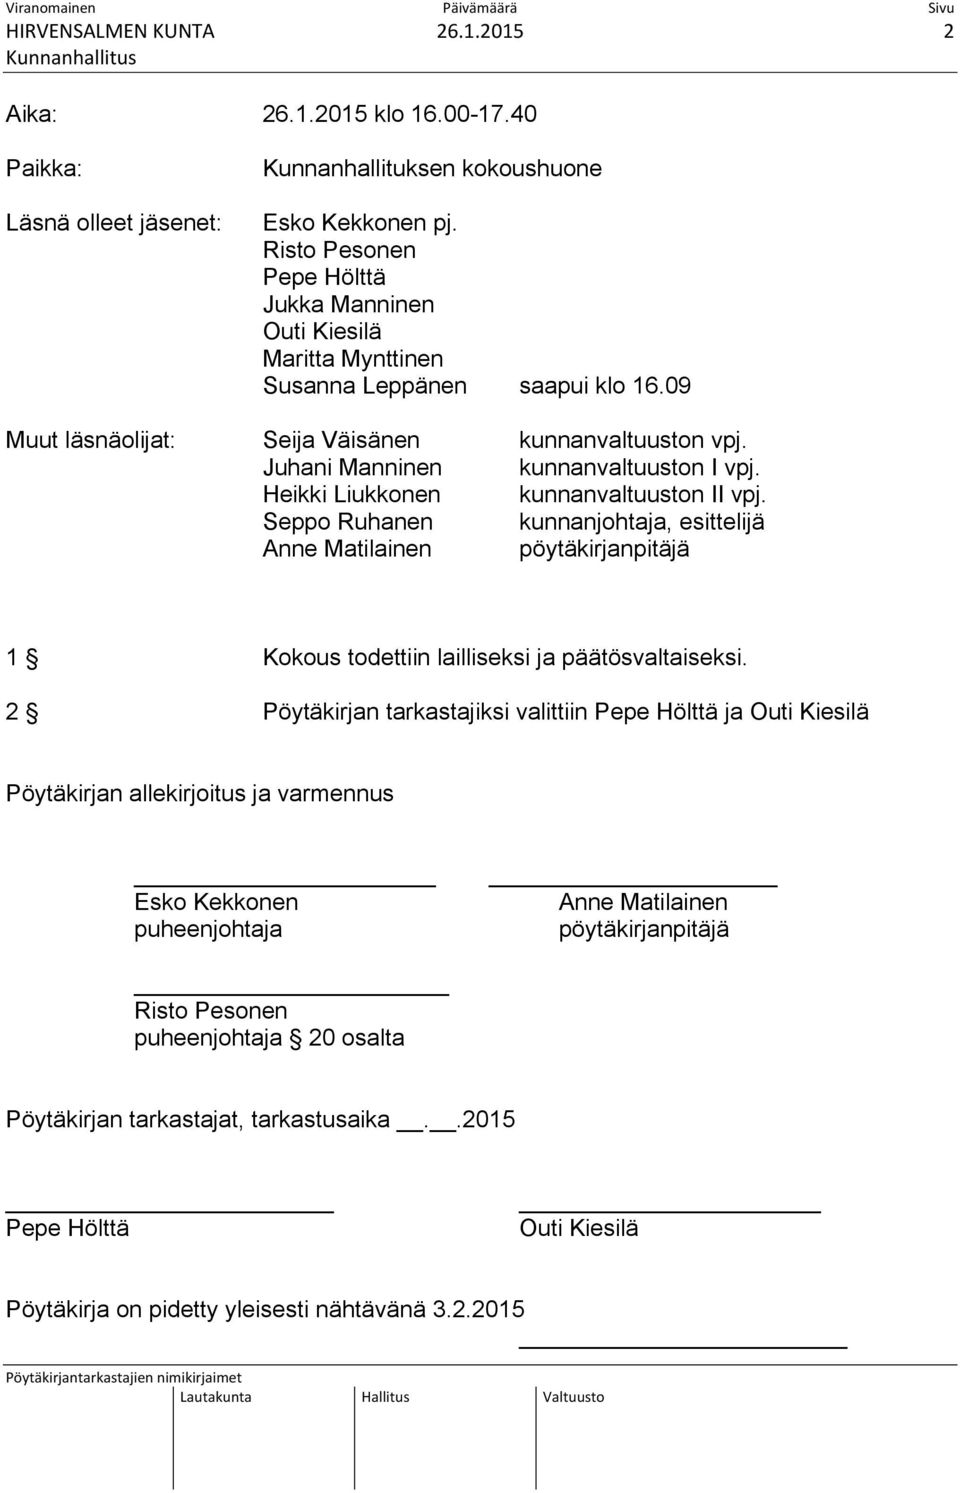 Heikki Liukkonen kunnanvaltuuston II vpj. Seppo Ruhanen kunnanjohtaja, esittelijä Anne Matilainen pöytäkirjanpitäjä 1 Kokous todettiin lailliseksi ja päätösvaltaiseksi.